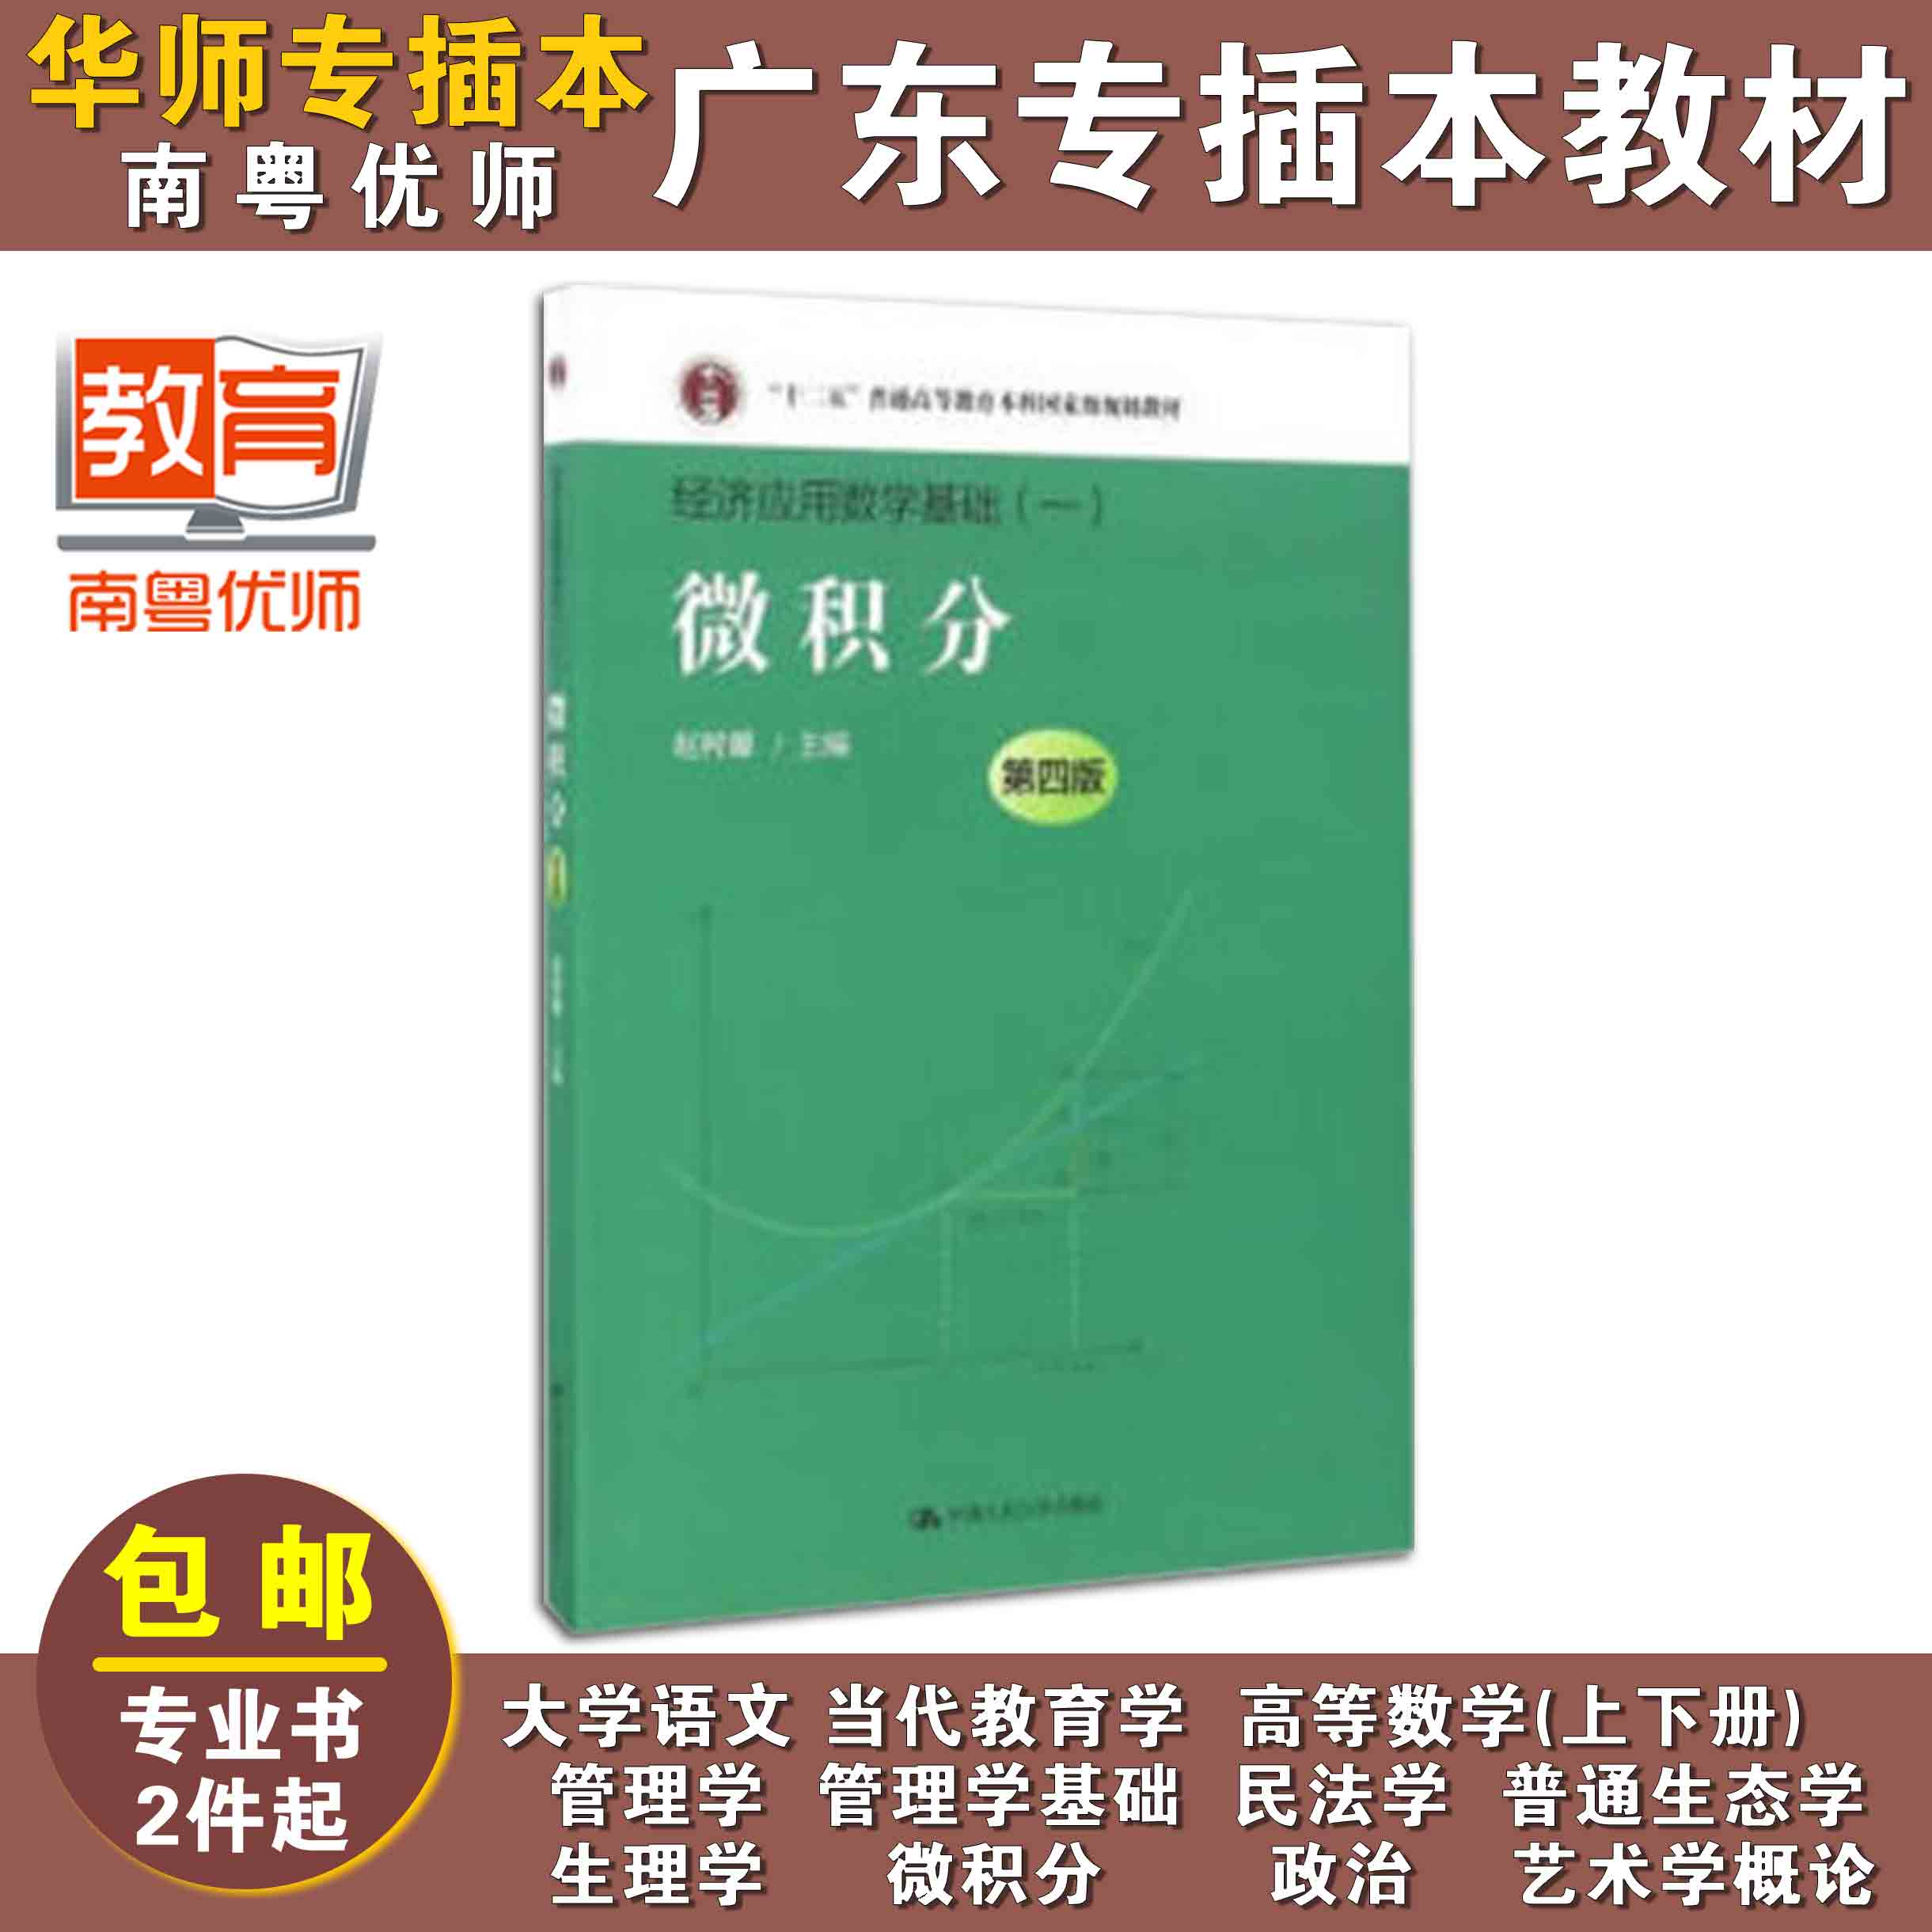 微积分(第四版),赵树嫄,中国人民大学出